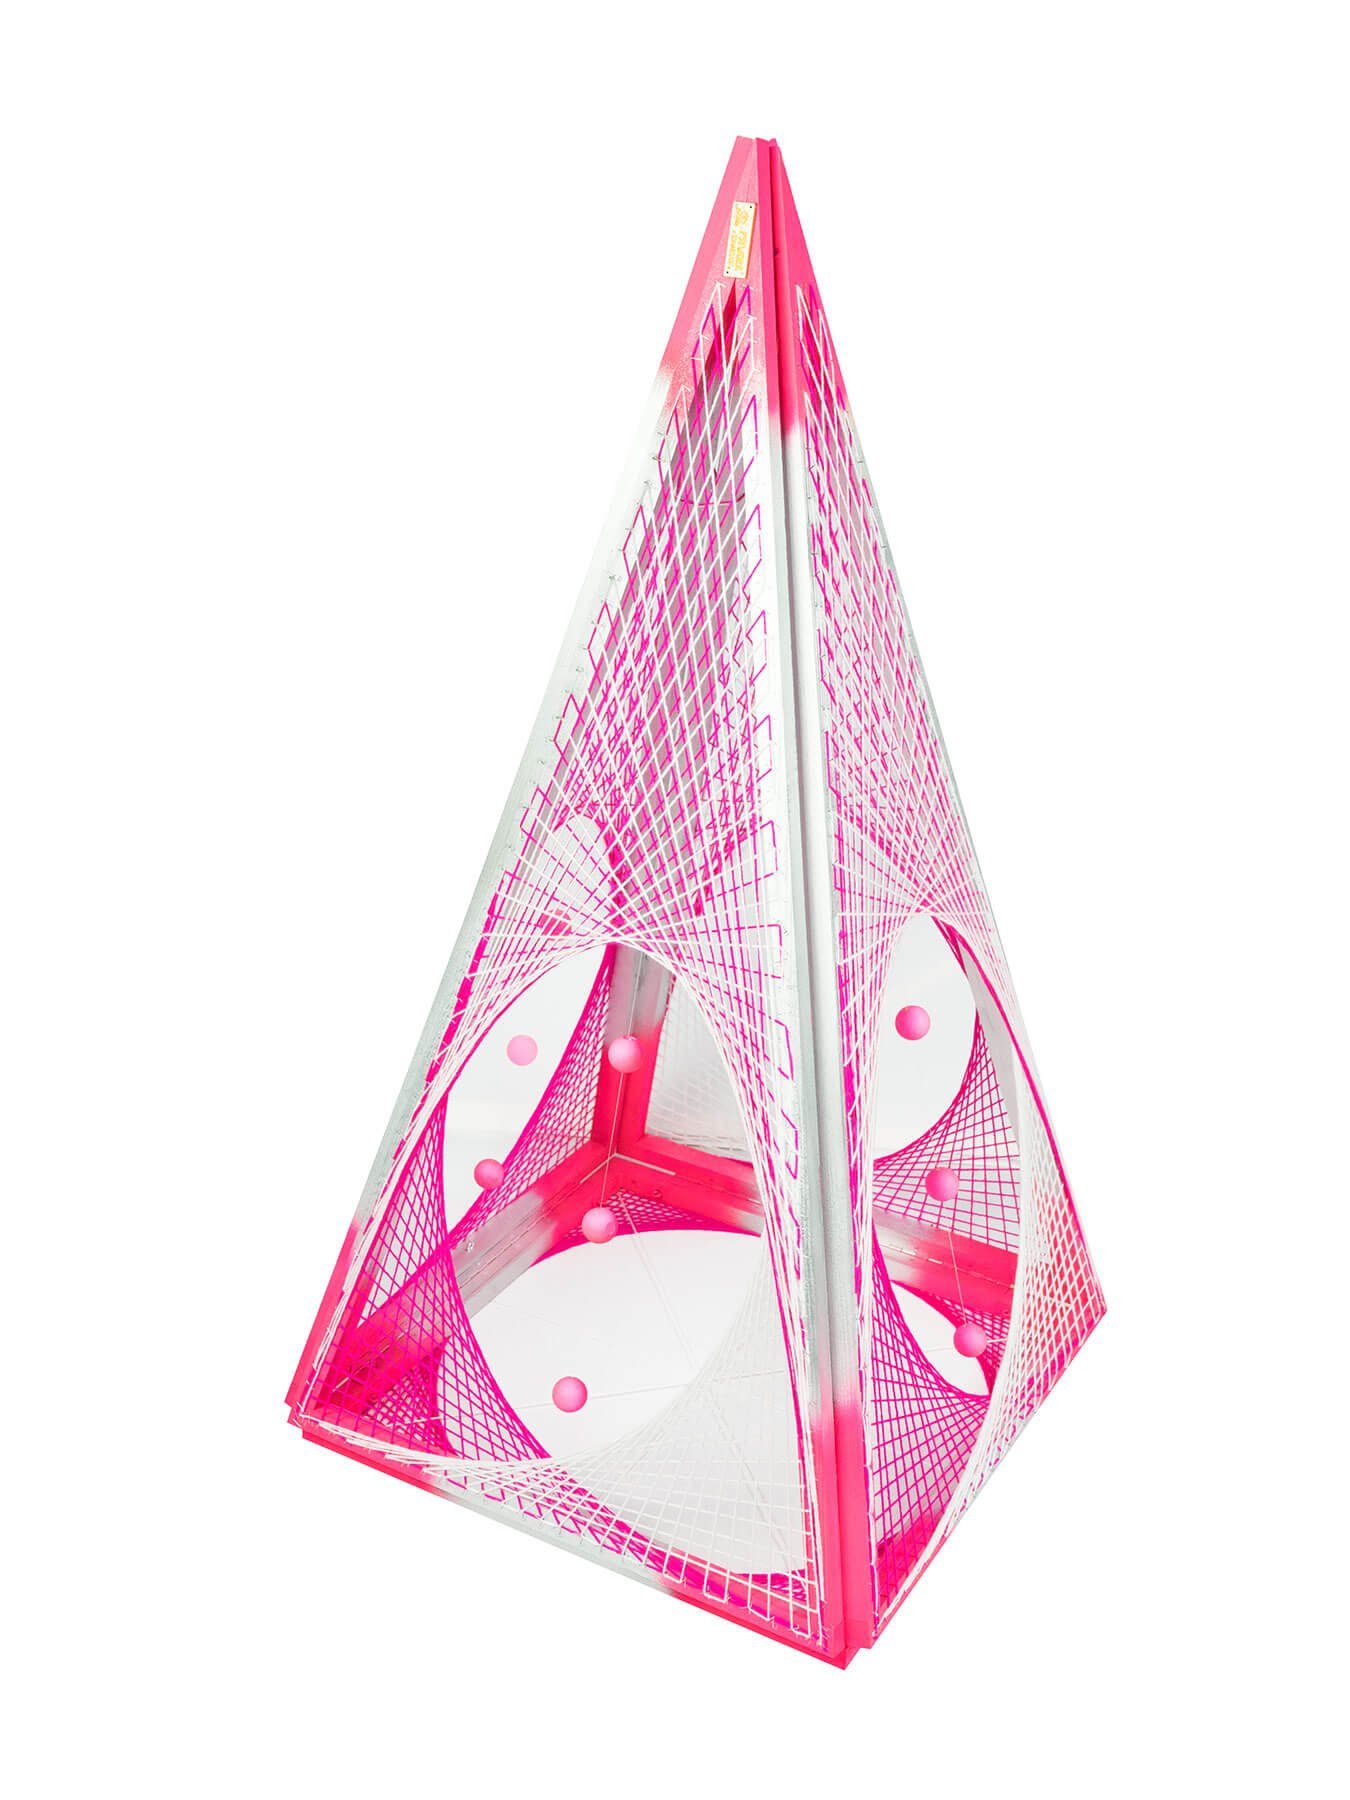 PSYWORK Dekoobjekt Schwarzlicht 3D StringArt Stern "Convertible Pyramid Pink", 3m, UV-aktiv, leuchtet unter Schwarzlicht